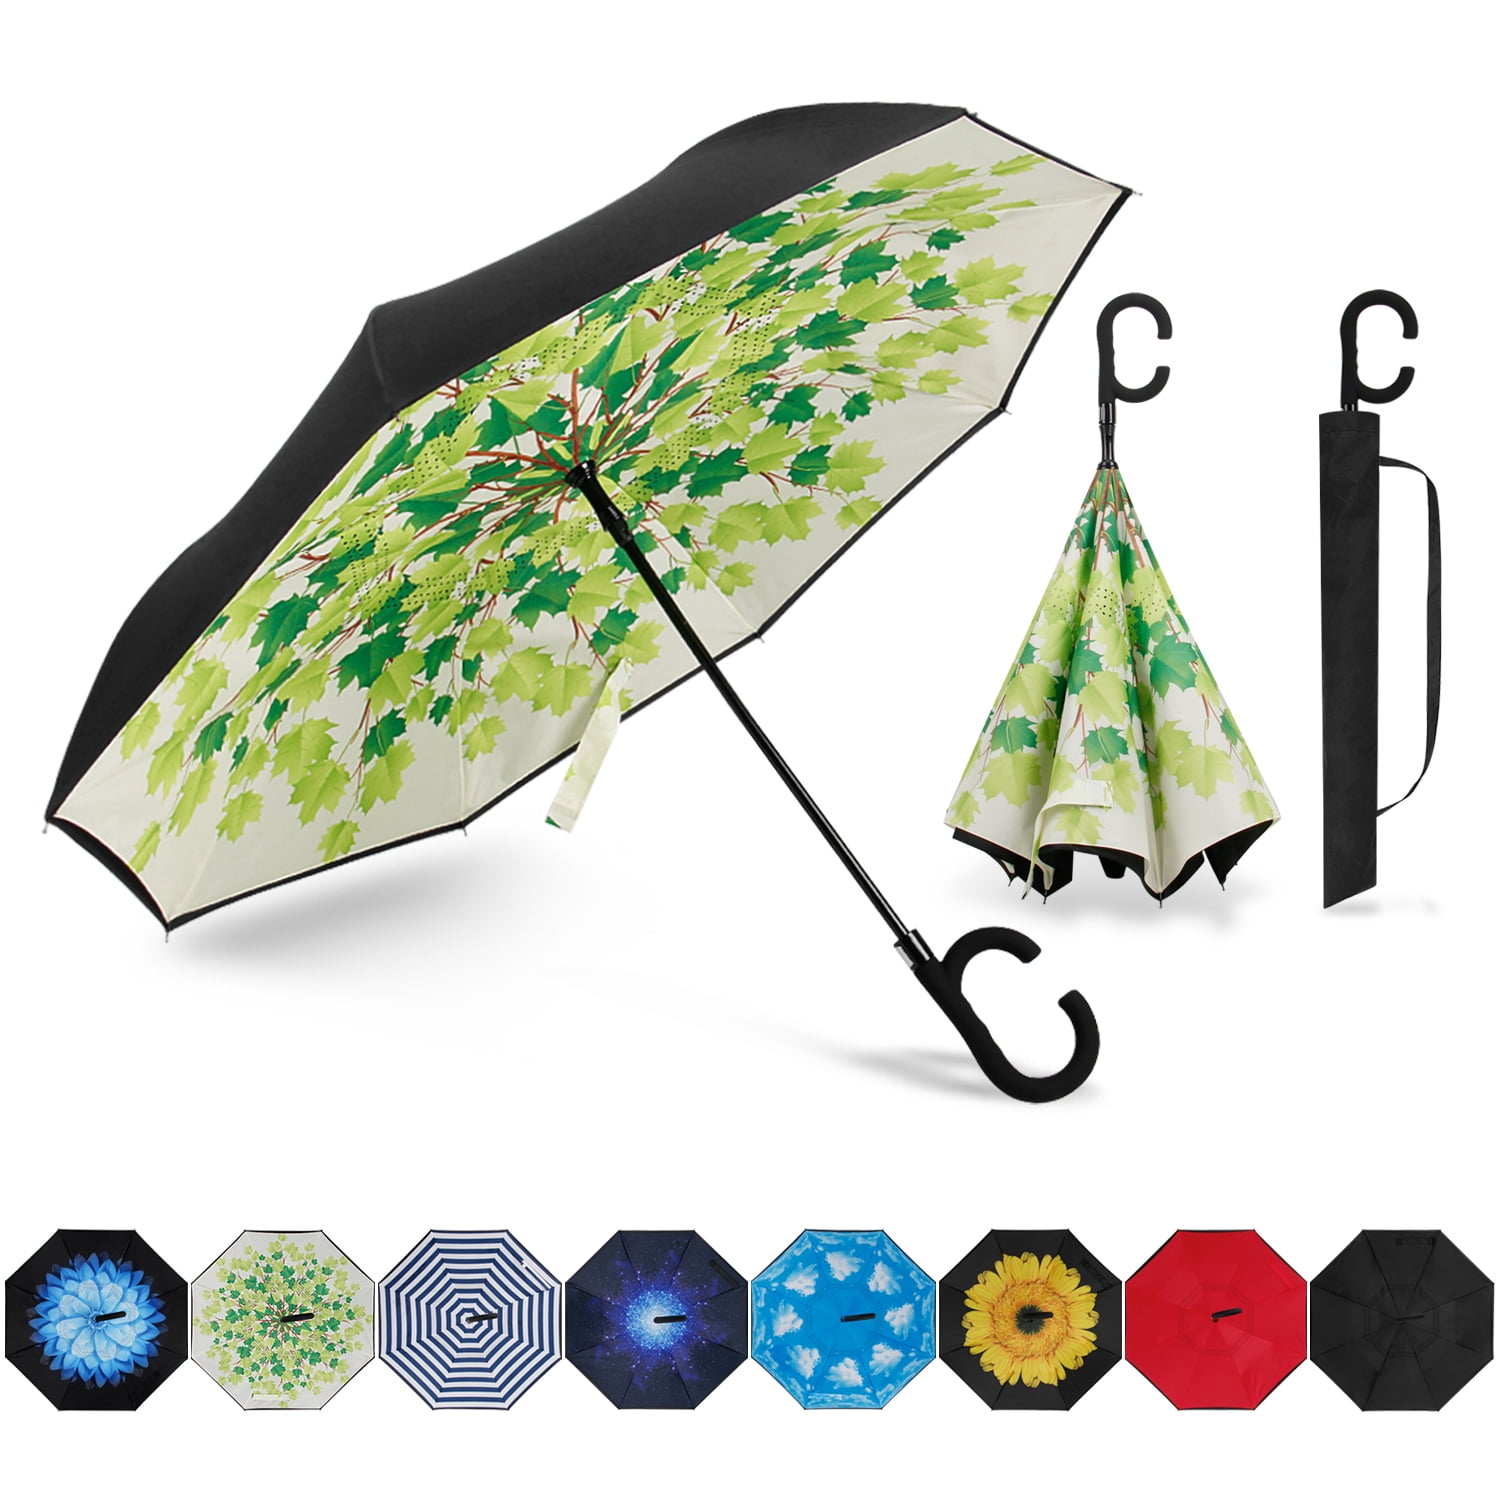 Umbrella Art Custom Umbrella Automatic Folding Umbrella Rainproof & Windprrof